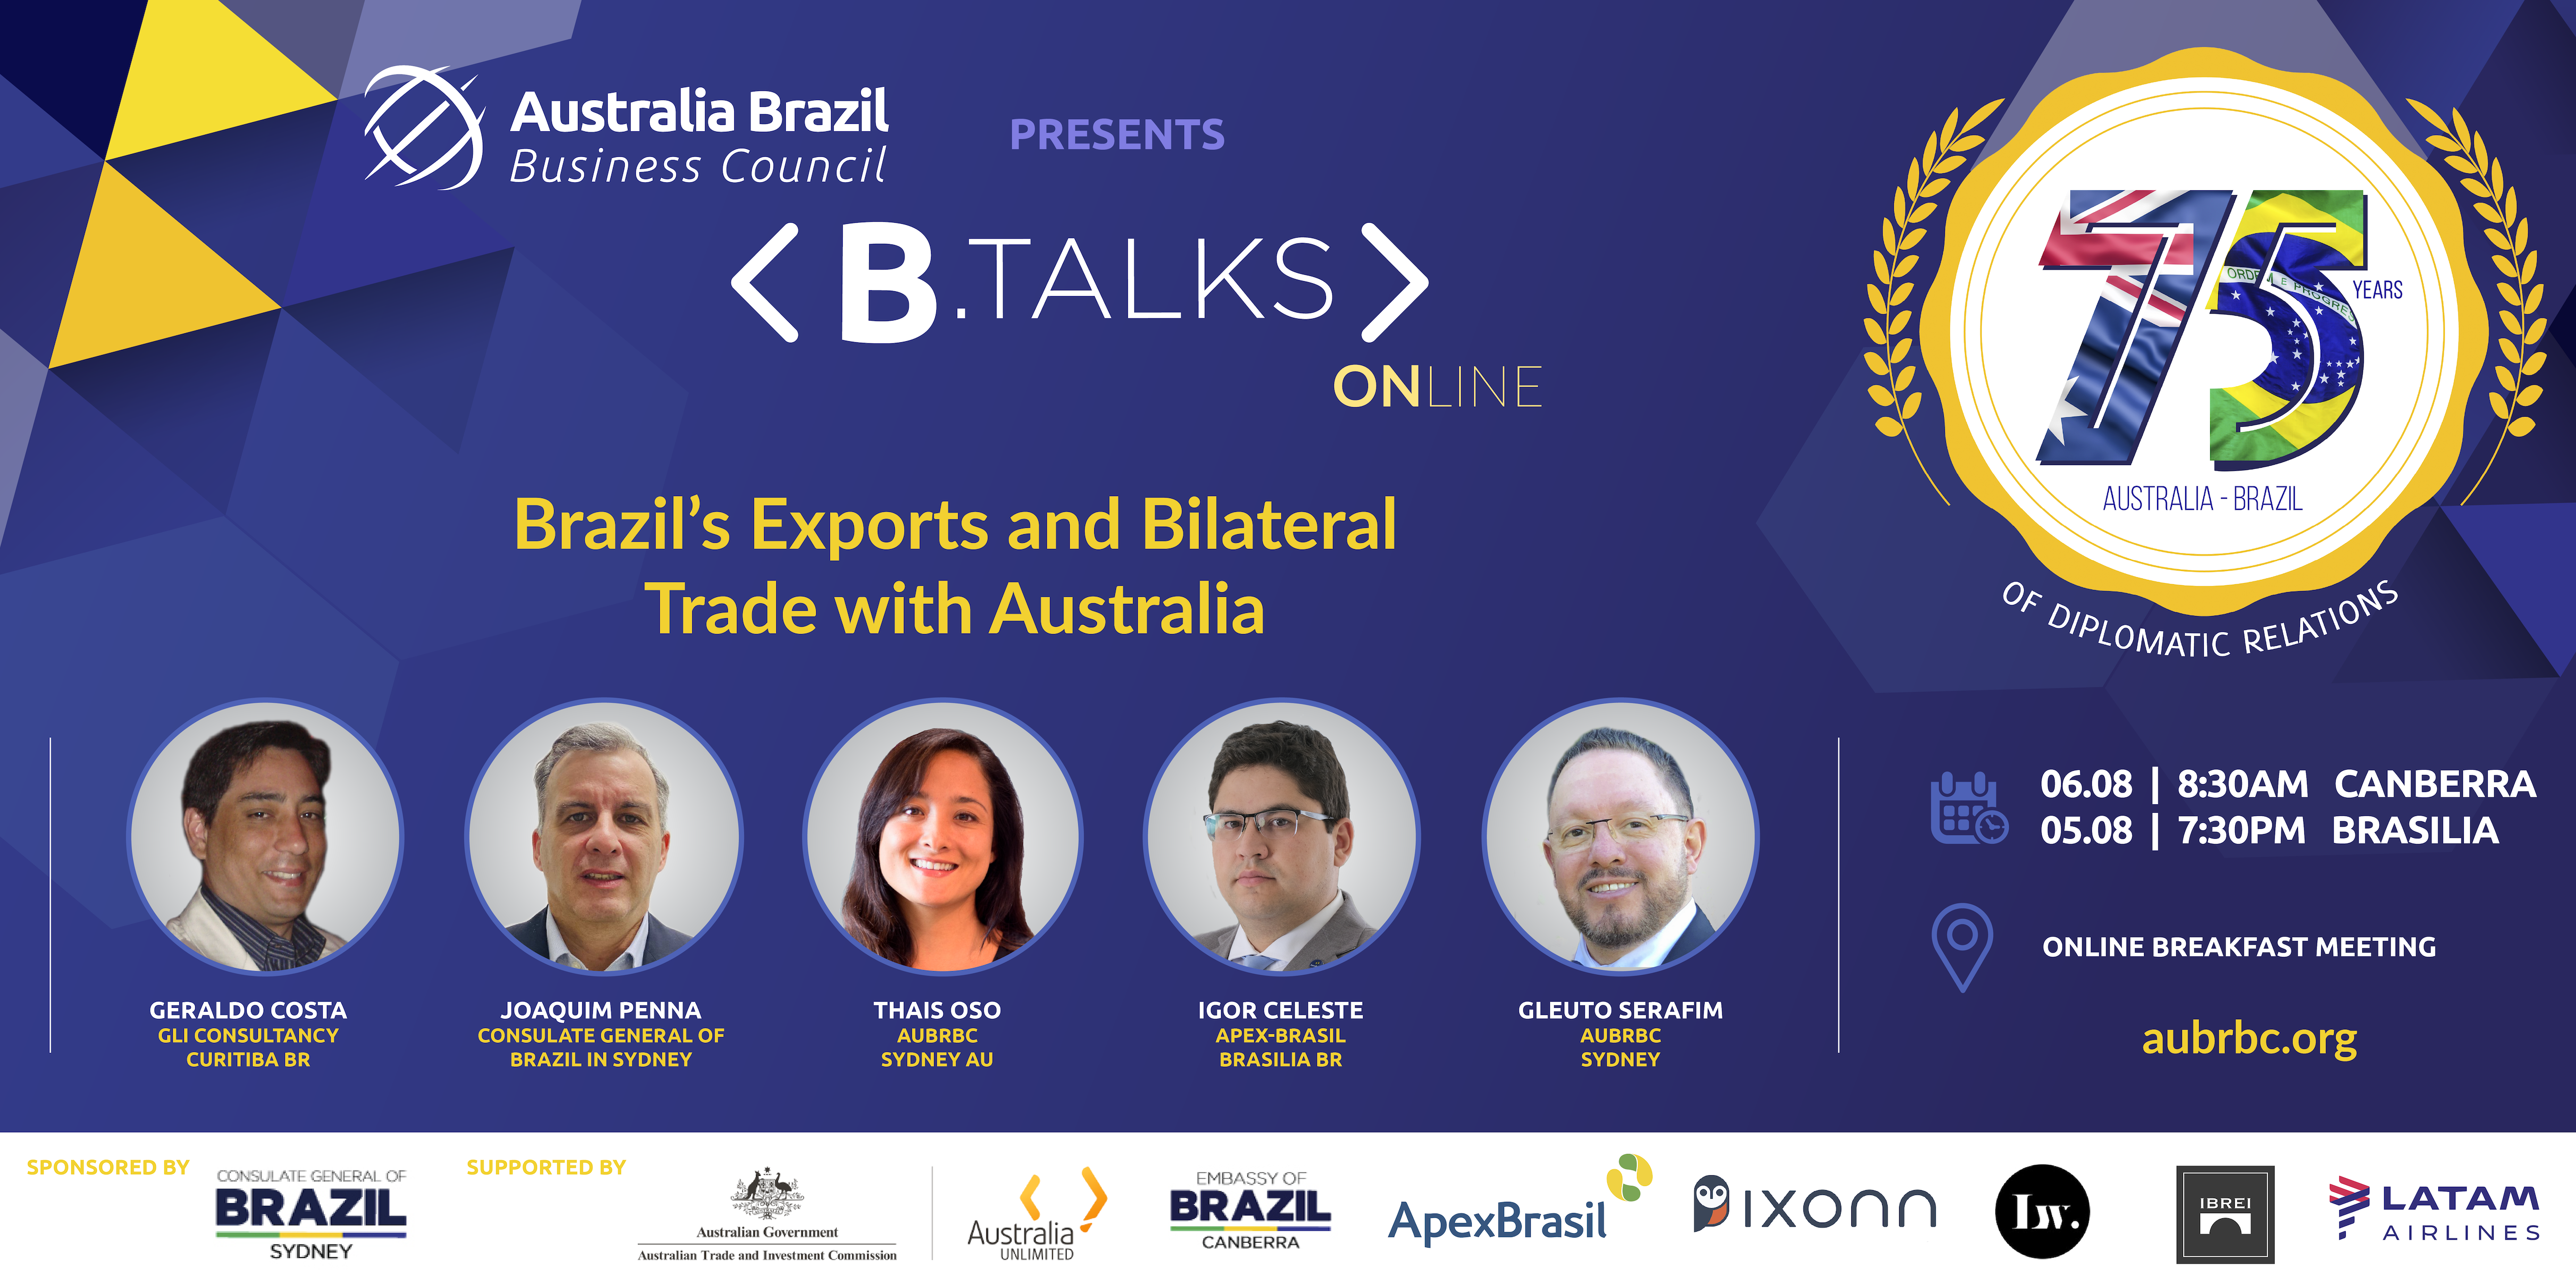 Apex-Brasil participará de webinar sobre relações comerciais Brasil-Austrália